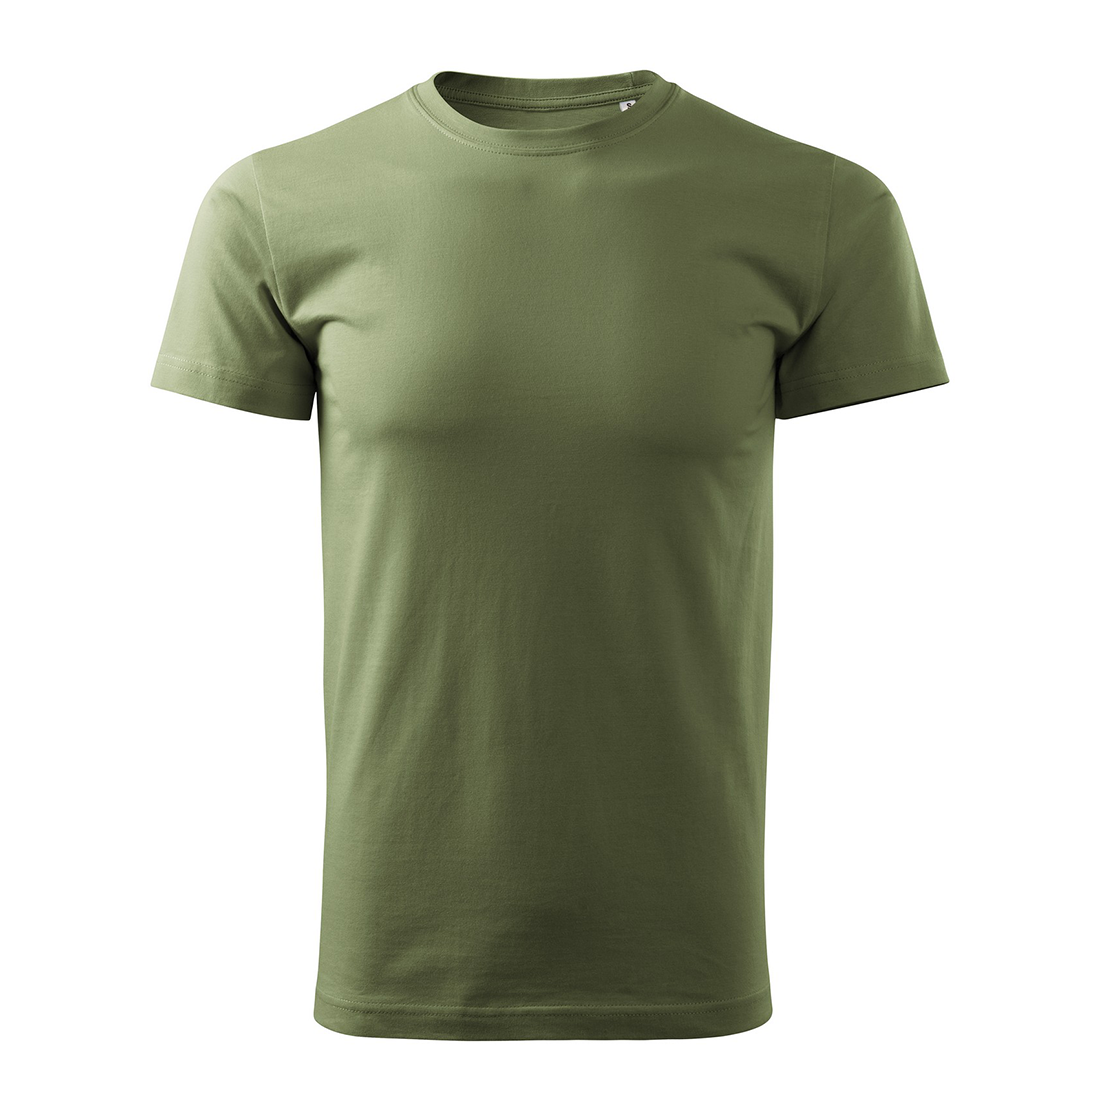 Camiseta hombre BASIC - Ropa de protección